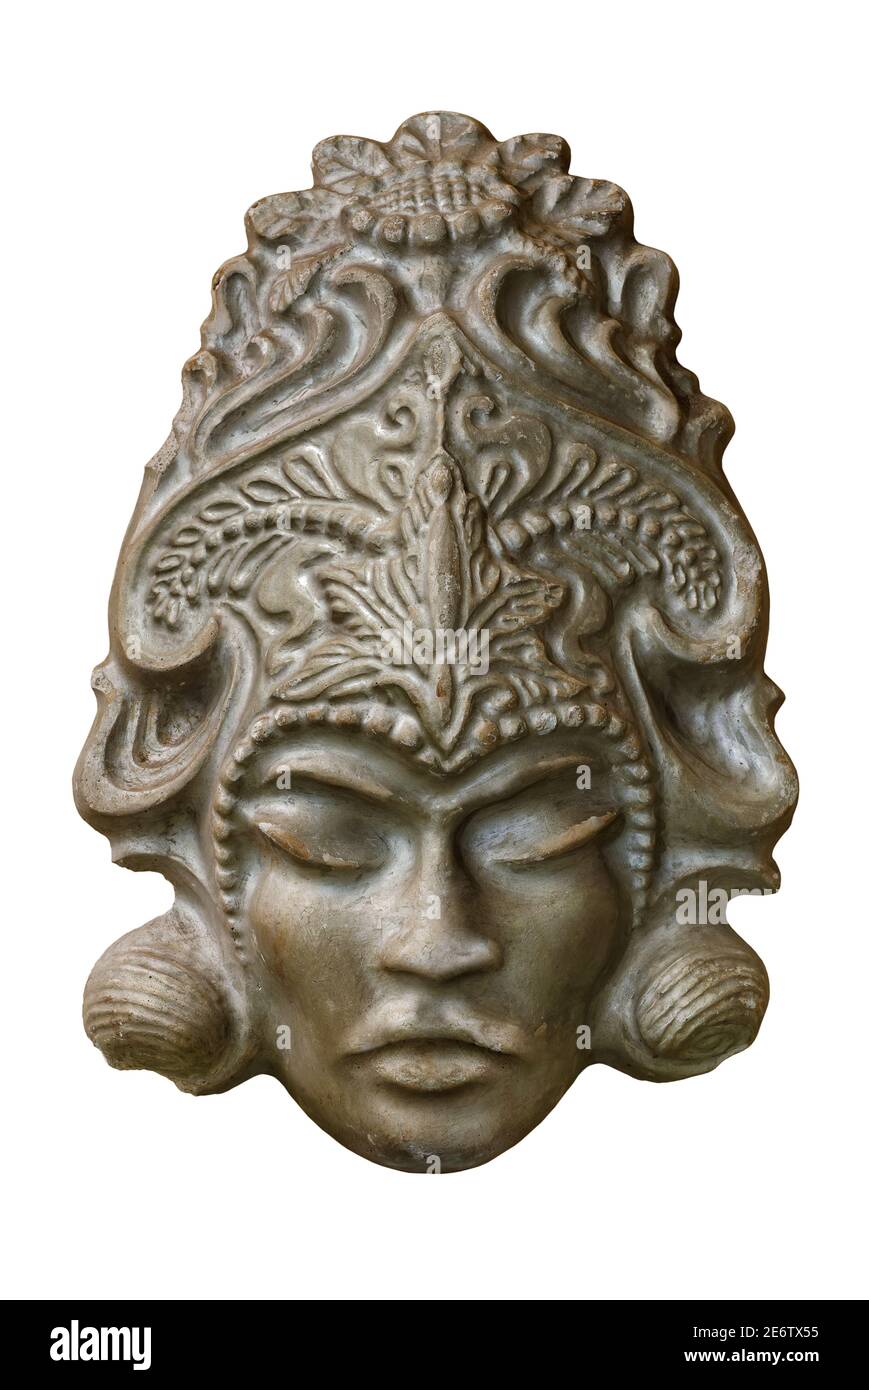 Maschera ricordo, ritratto facciale della dea asiatica generica, prodotto artigianale tradizionale, isolato su sfondo bianco Foto Stock